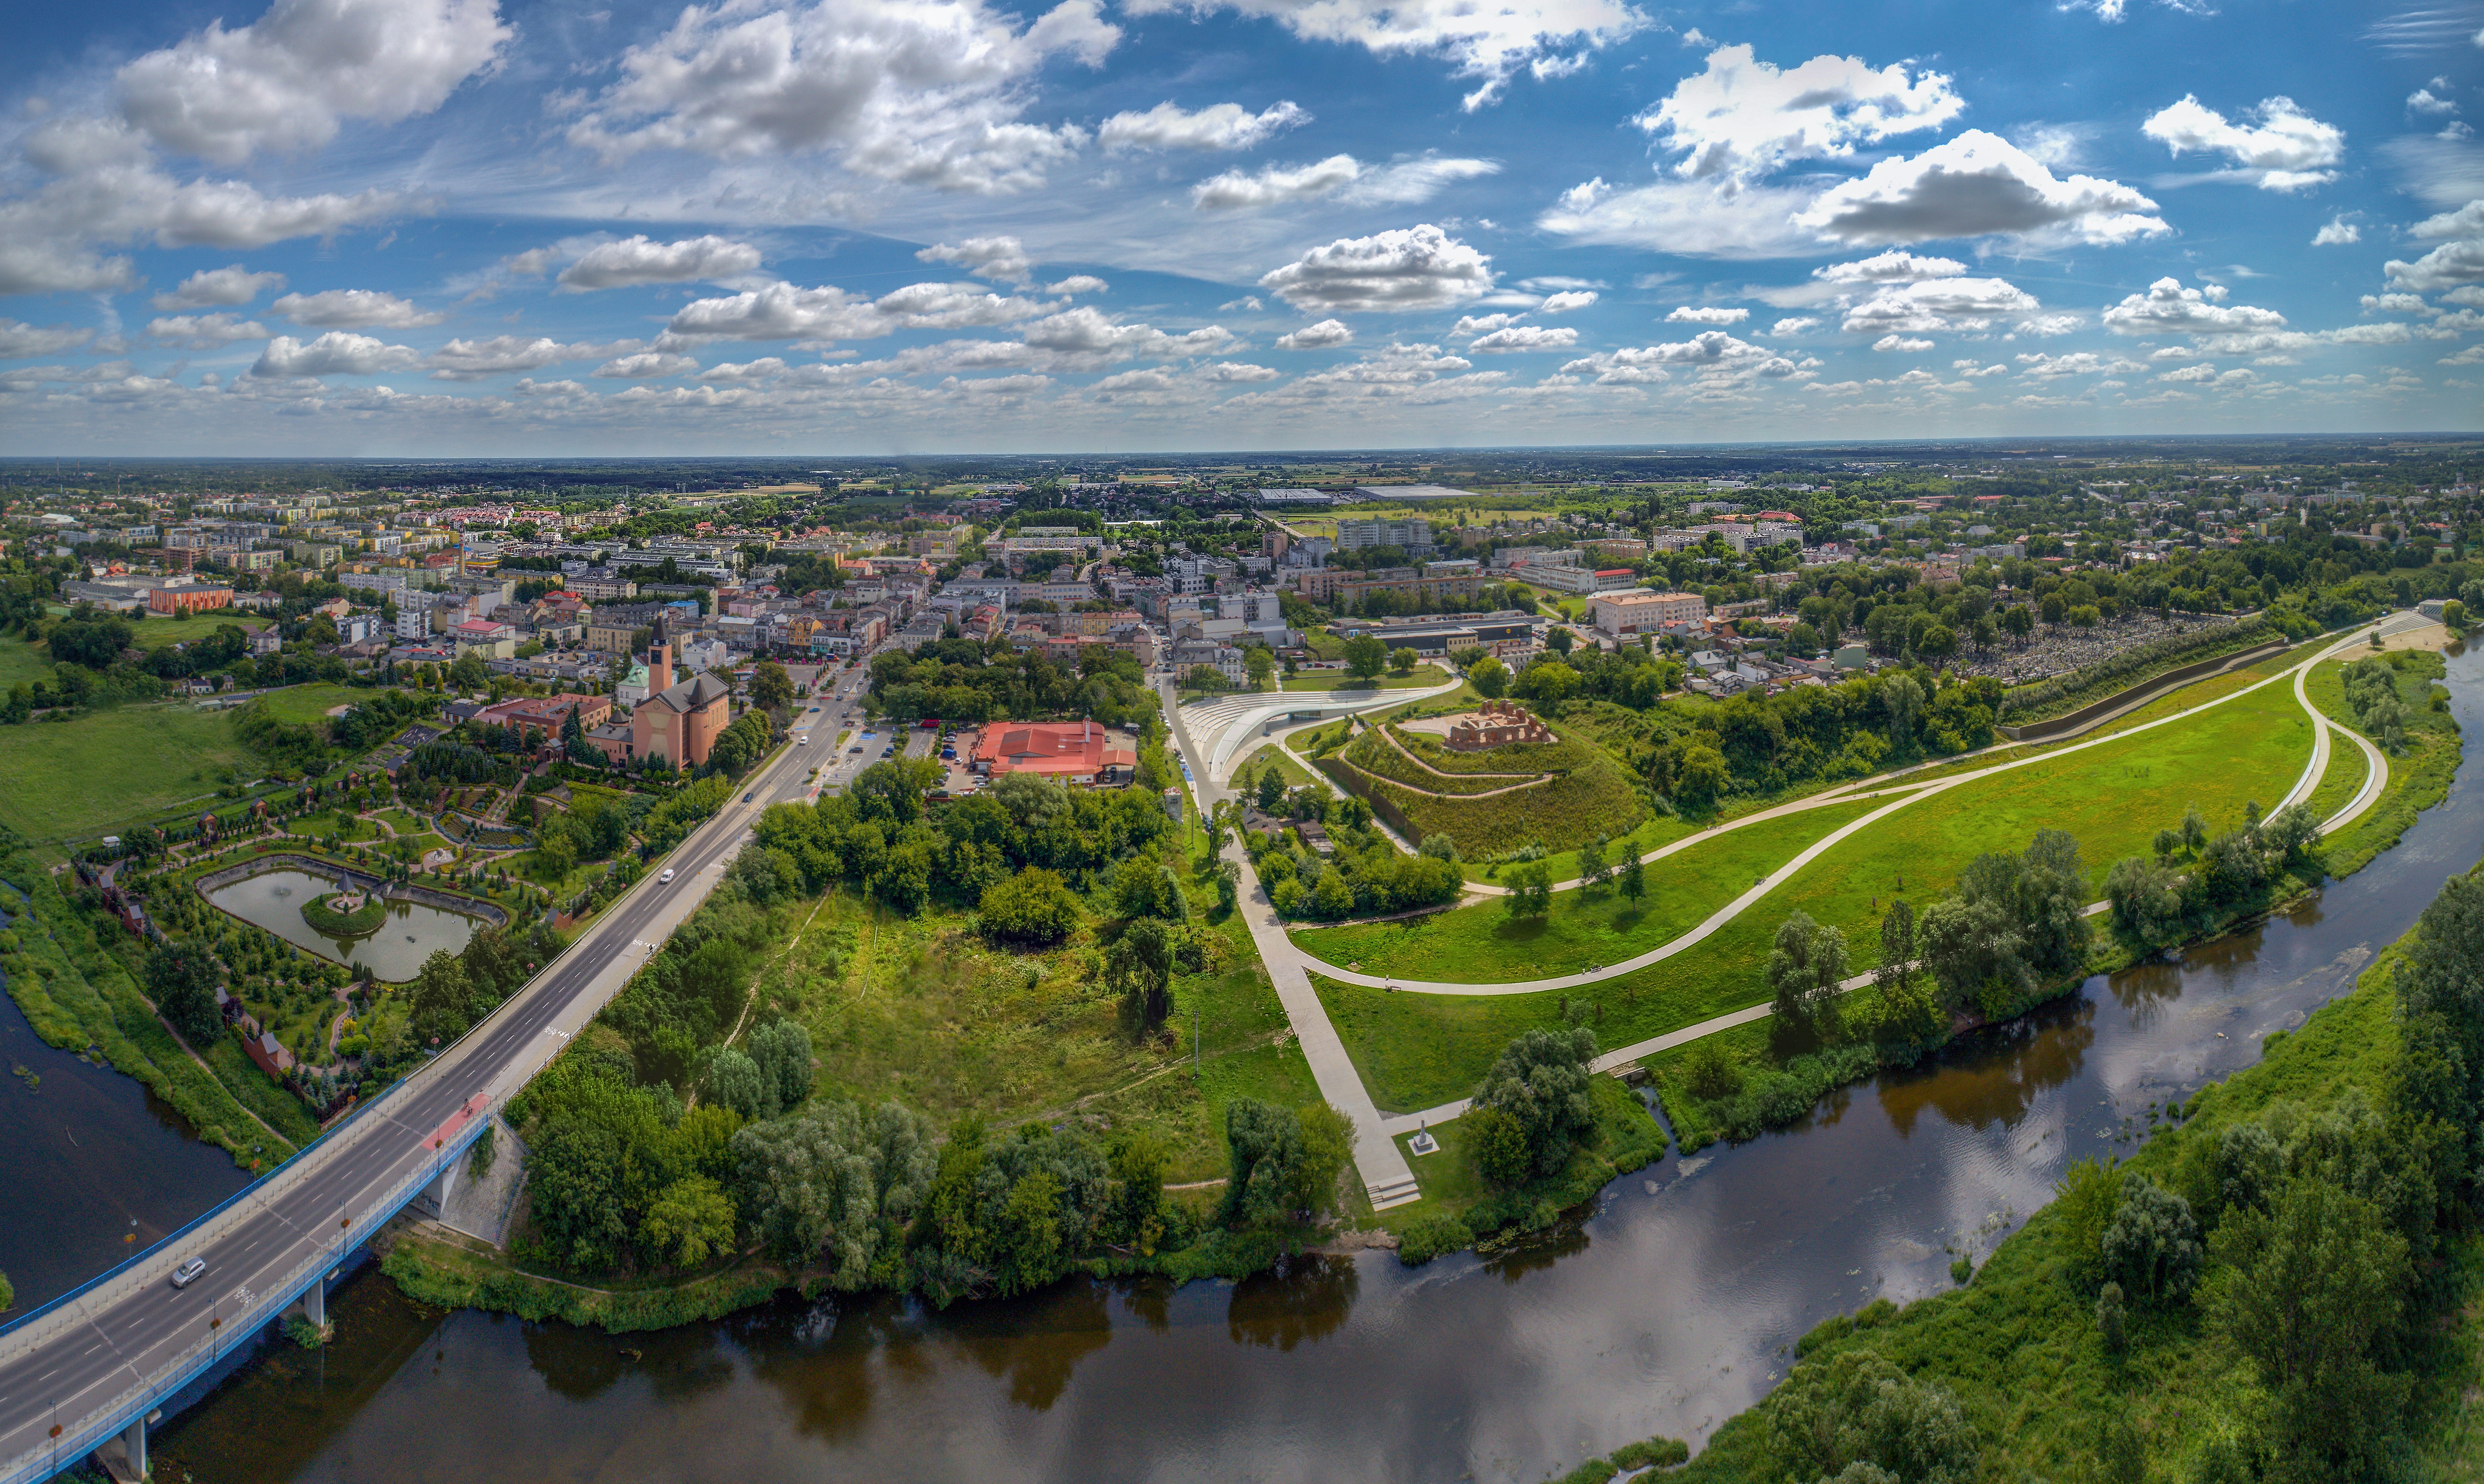 Widok Sochaczewa z lotu ptaka - widoczna Bzura, most, tereny zielone i dalej zabudowania miasta